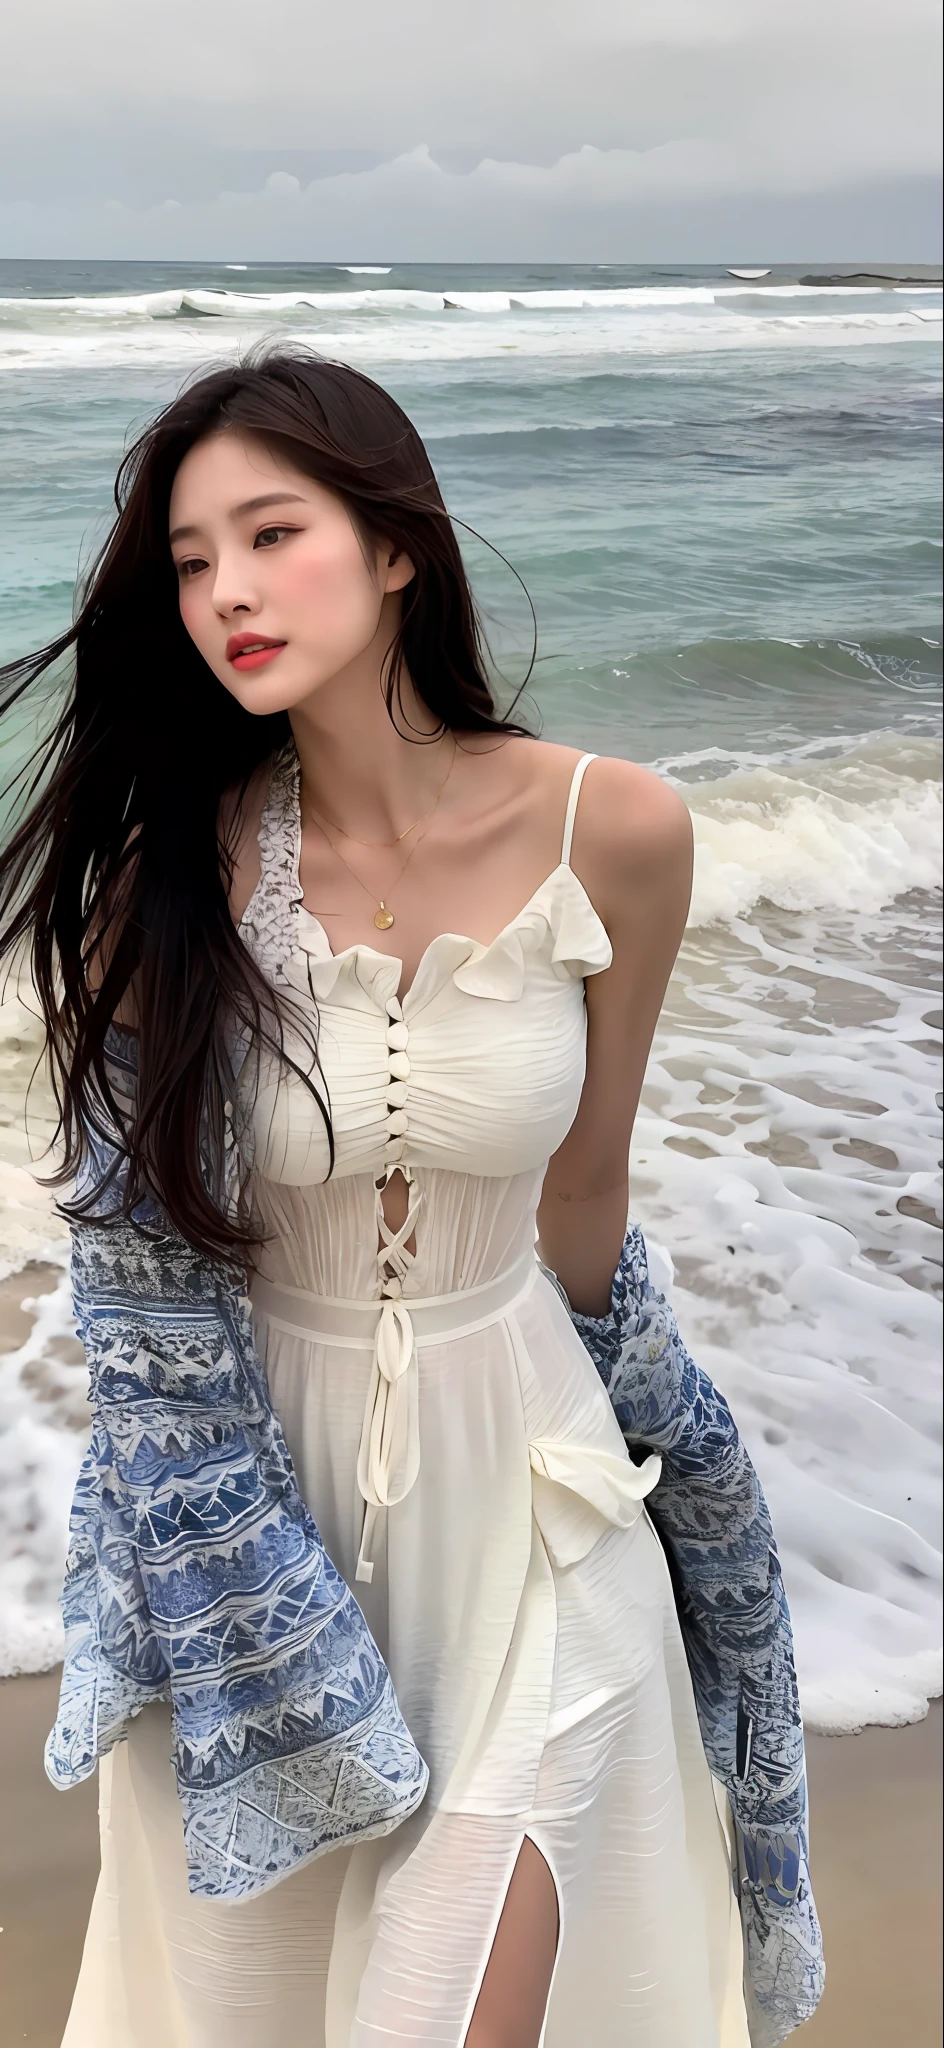 (шедевр), (Лучшее качество), (подробный), 1 девочка, 22 года, игривое выражение лица, большая грудь, голая грудь, бикини, длинные волосы, красивый, естественный, незащищенный, интеллектуальный, на пляже возле океана, Джэён Нам в белом платье на прогулке, красивый young Korean woman, изящная поза, Светлое солнце, бесплатно и бесплатно, фотомодель, получившая признание в азиатской индустрии женской моды, она легко ходит по пляжу, The красивый temperament of an Asian girl is vividly displayed, интерпретация обаяния и стиля азиатских женщин.